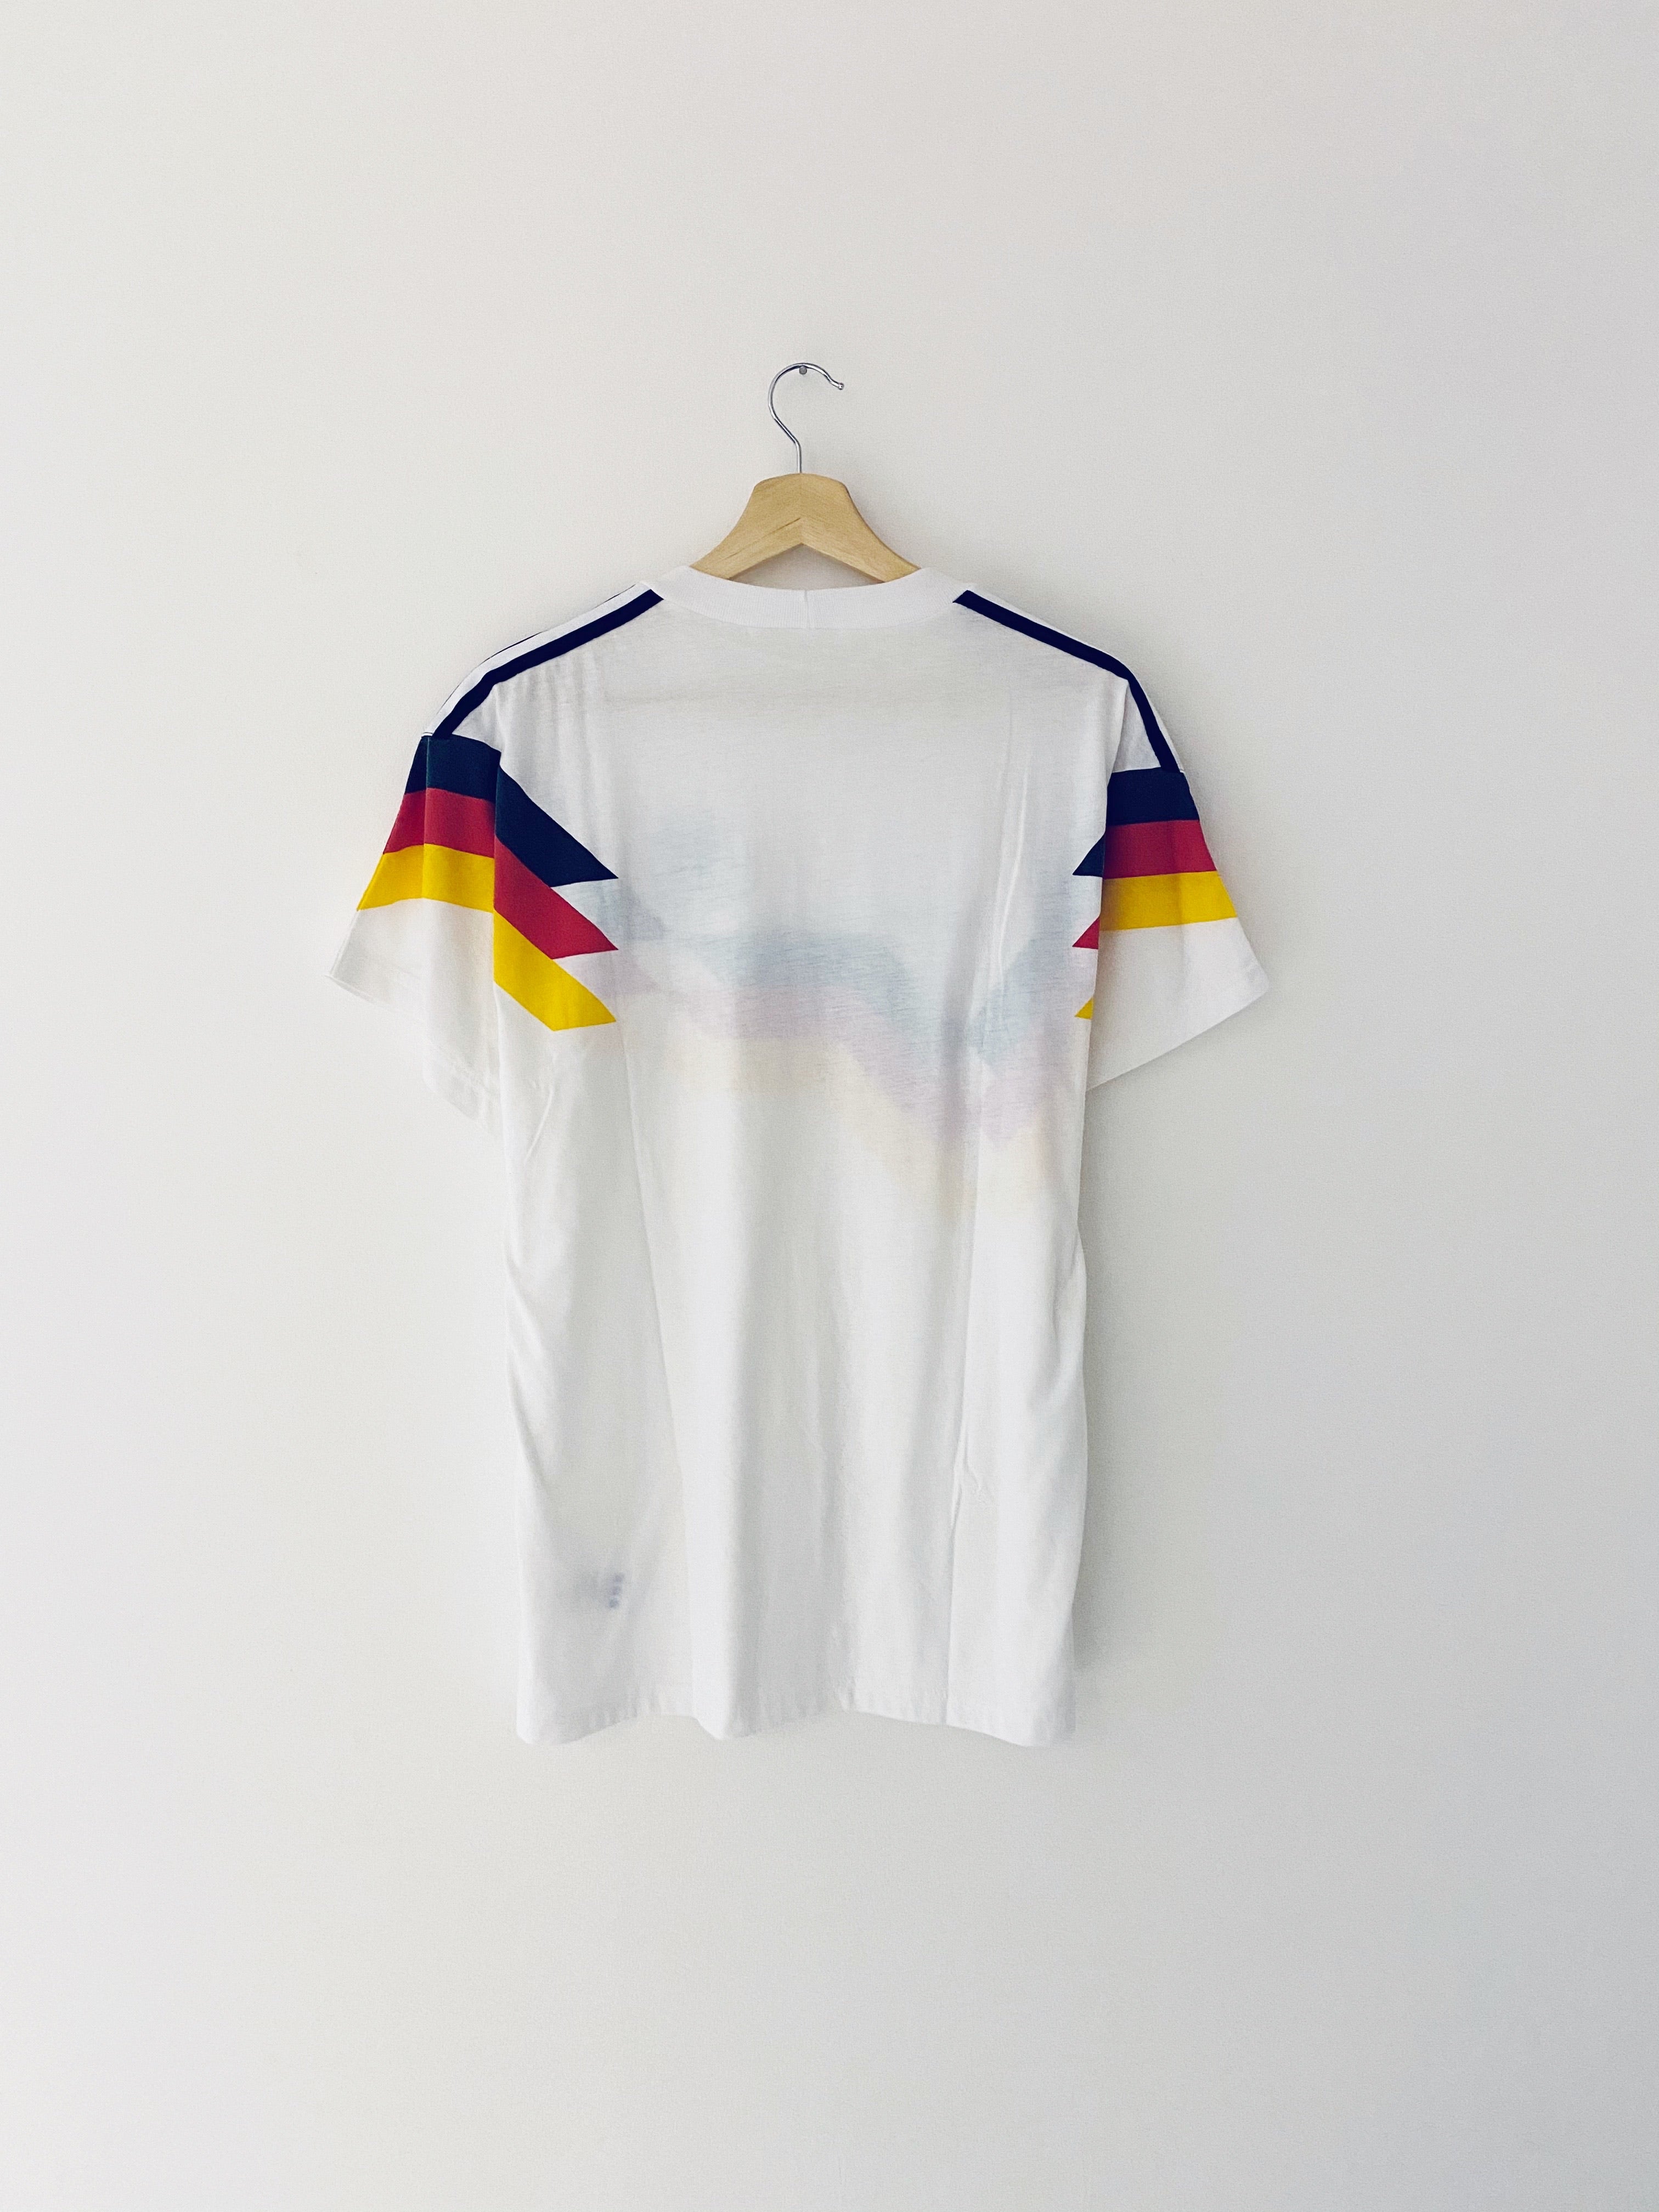 Camiseta de entrenamiento de Alemania 1990/92 (M/L) 9/10 